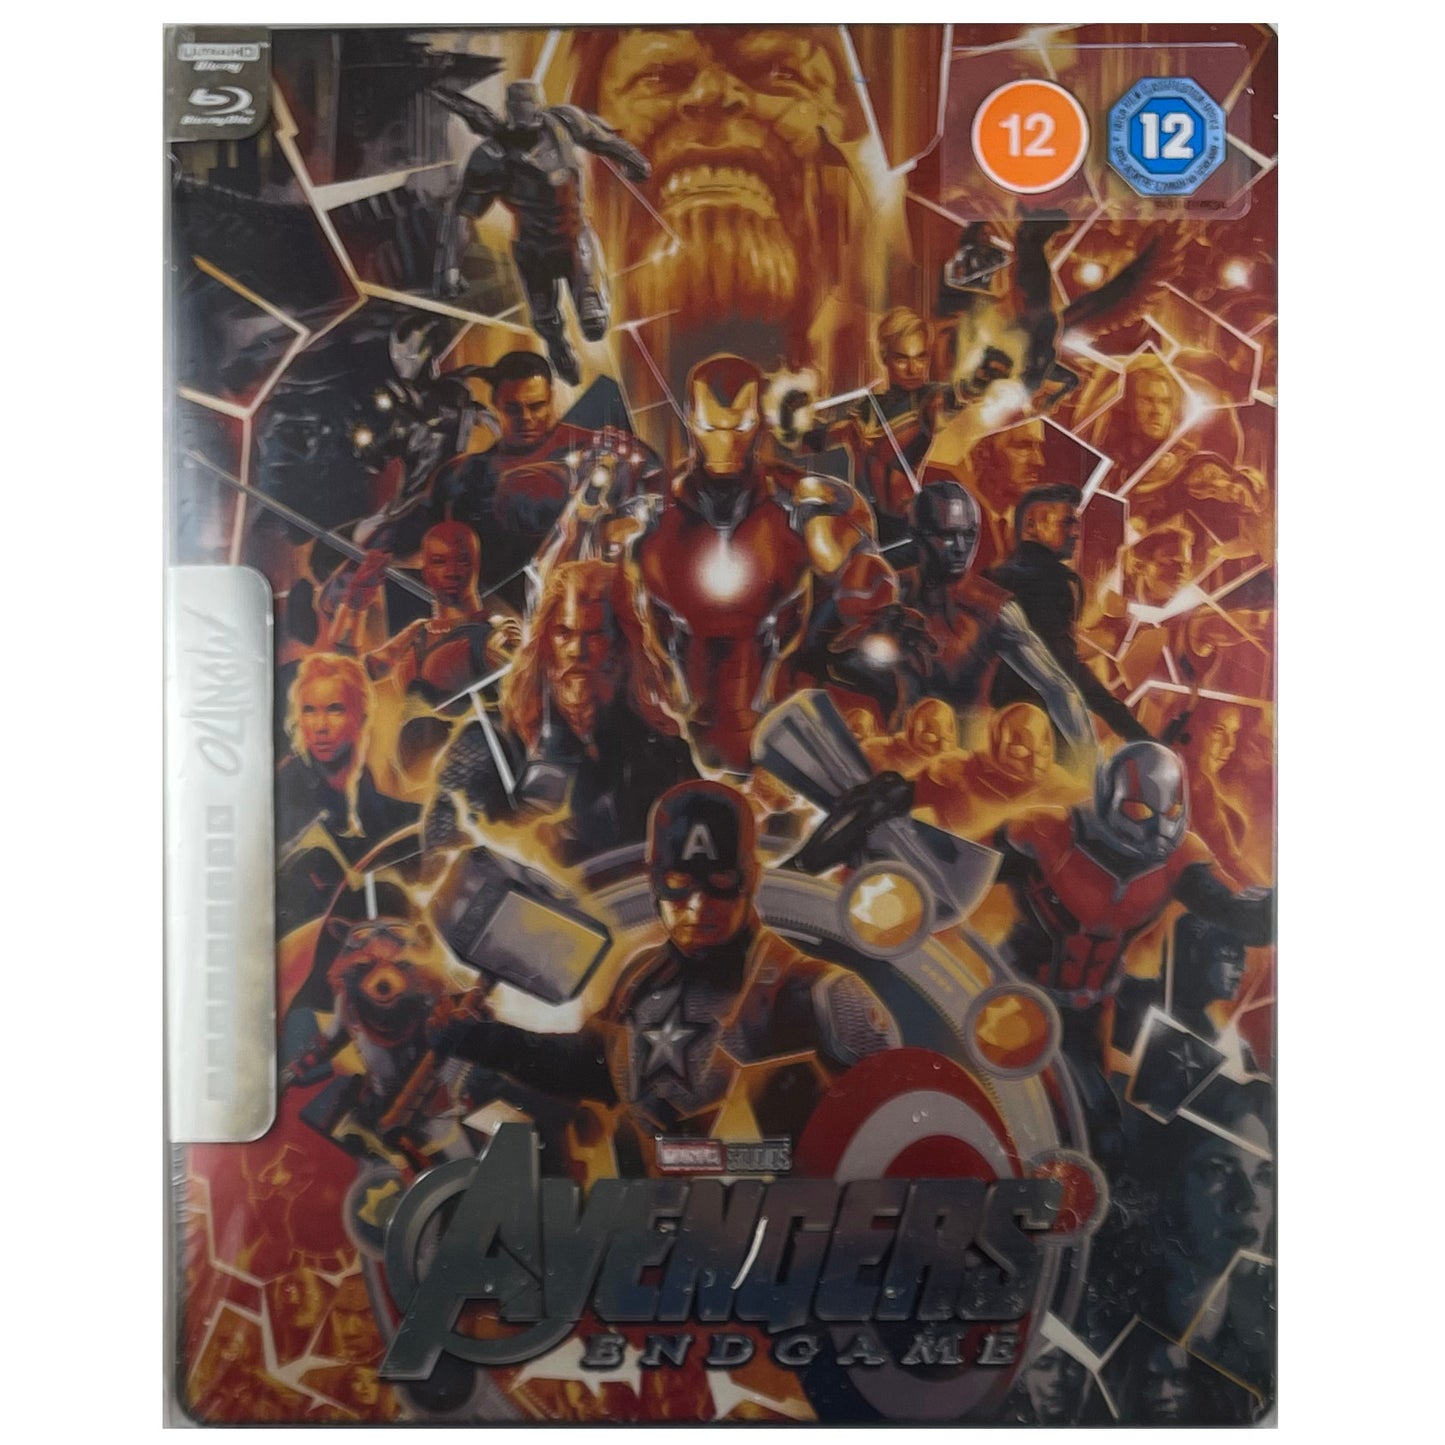 Avengers: Endgame Mondo 4K Steelbook